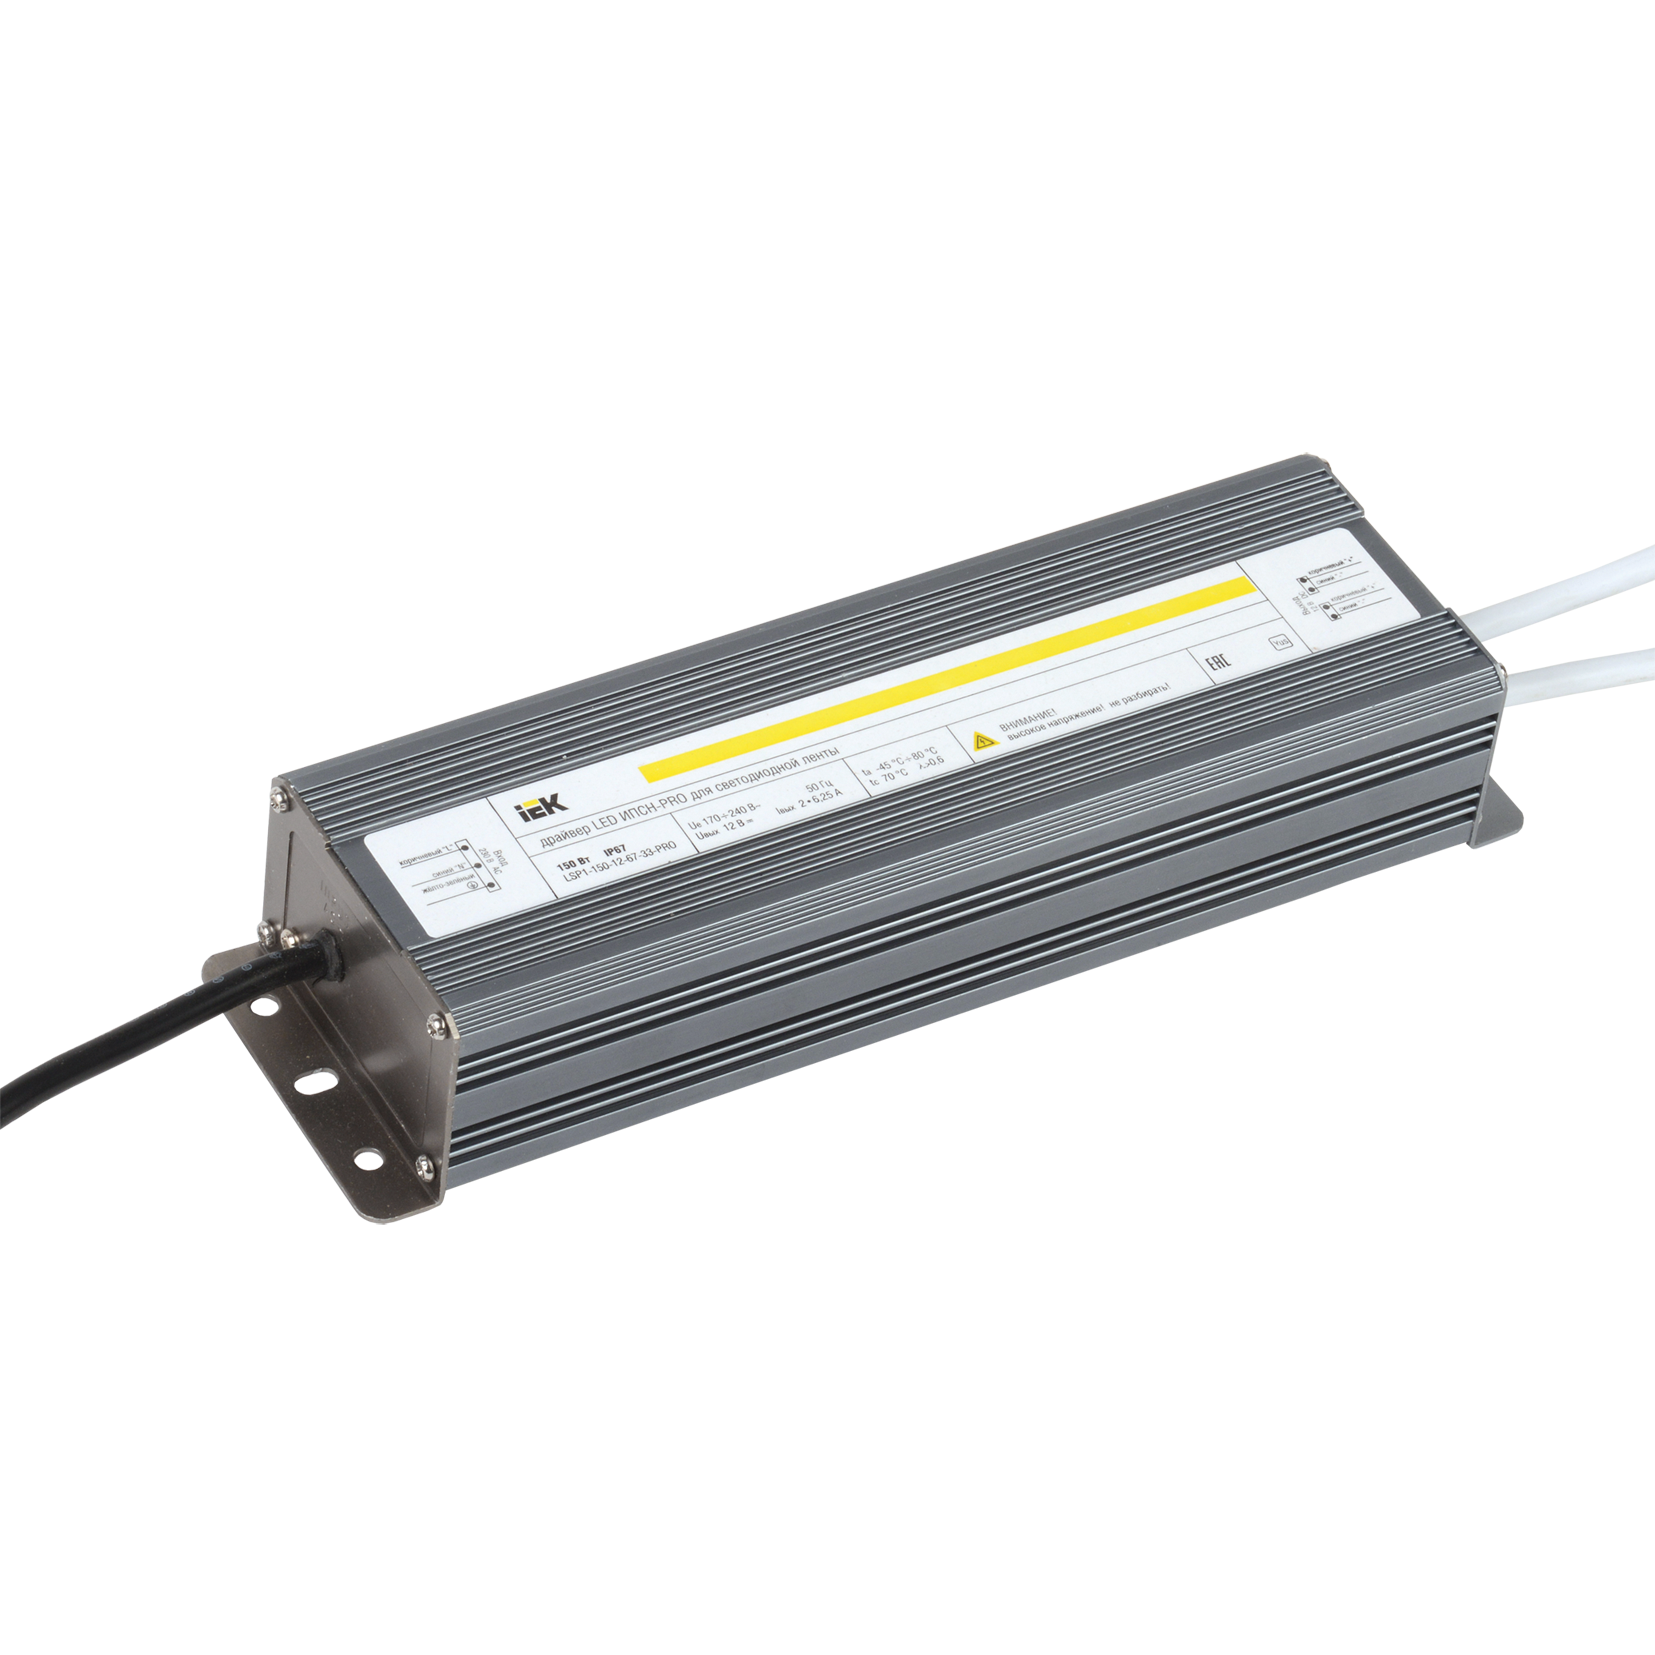 Драйвер LED ипсн-pro 150Вт 12 В блок- шнуры IP67 IEK (Цена за: 1 шт.)